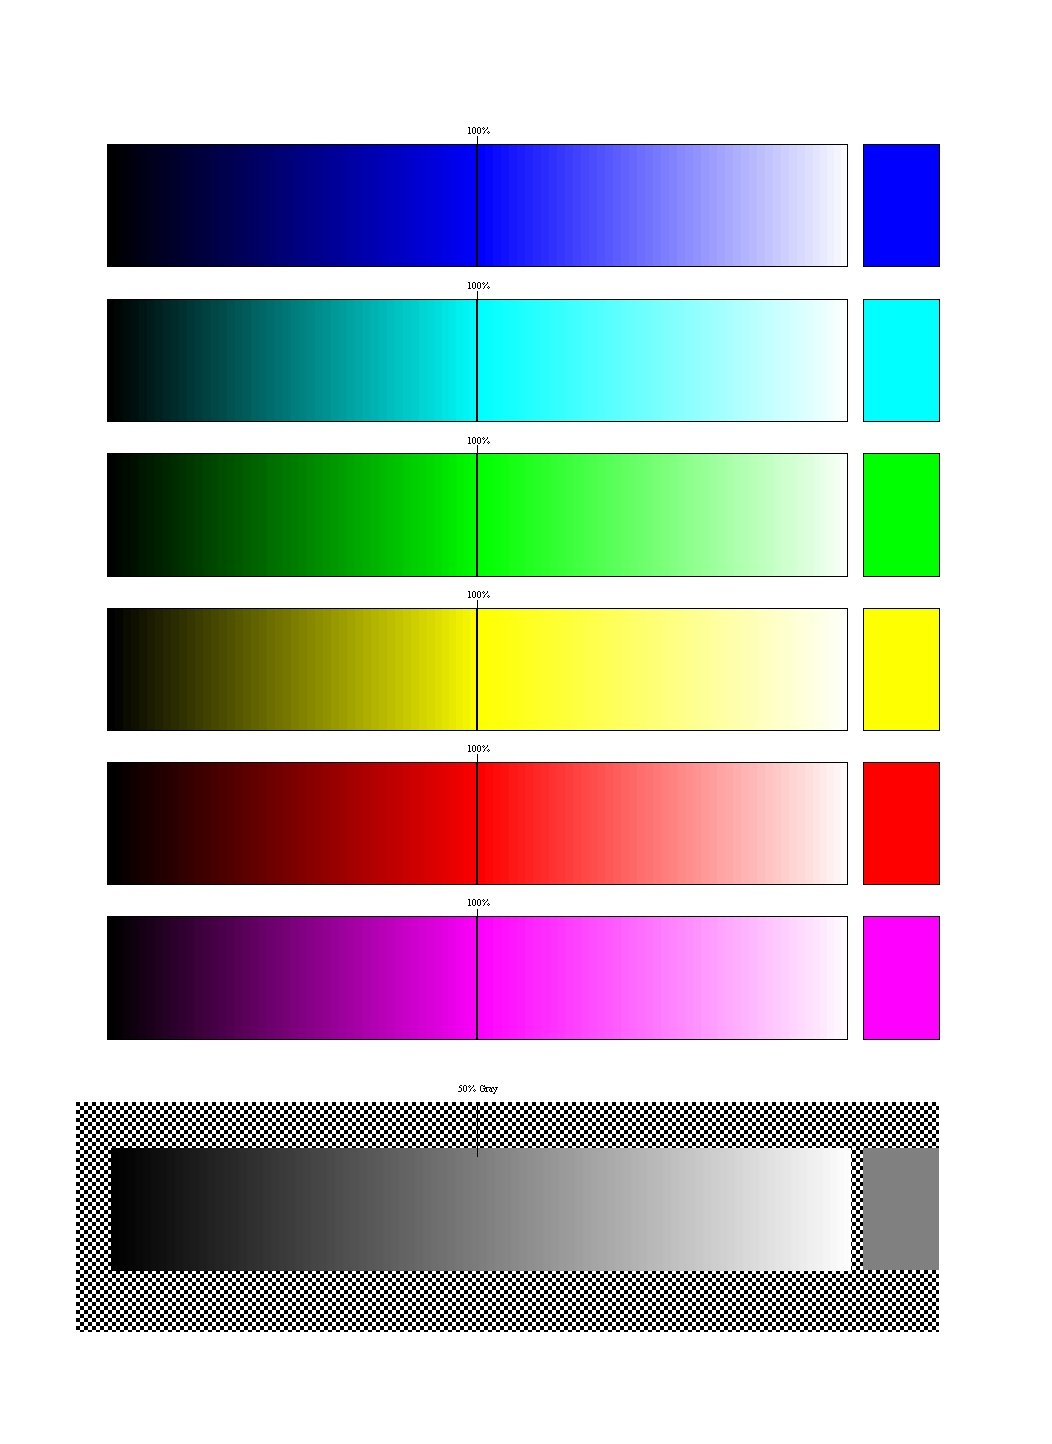 Тестовая печать epson. Тестовый лист для принтера Эпсон l800. Эпсон тест дюз 6 цветов. Тест печати струйного принтера Epson l800. Калибровочная таблица для принтера Эпсон.